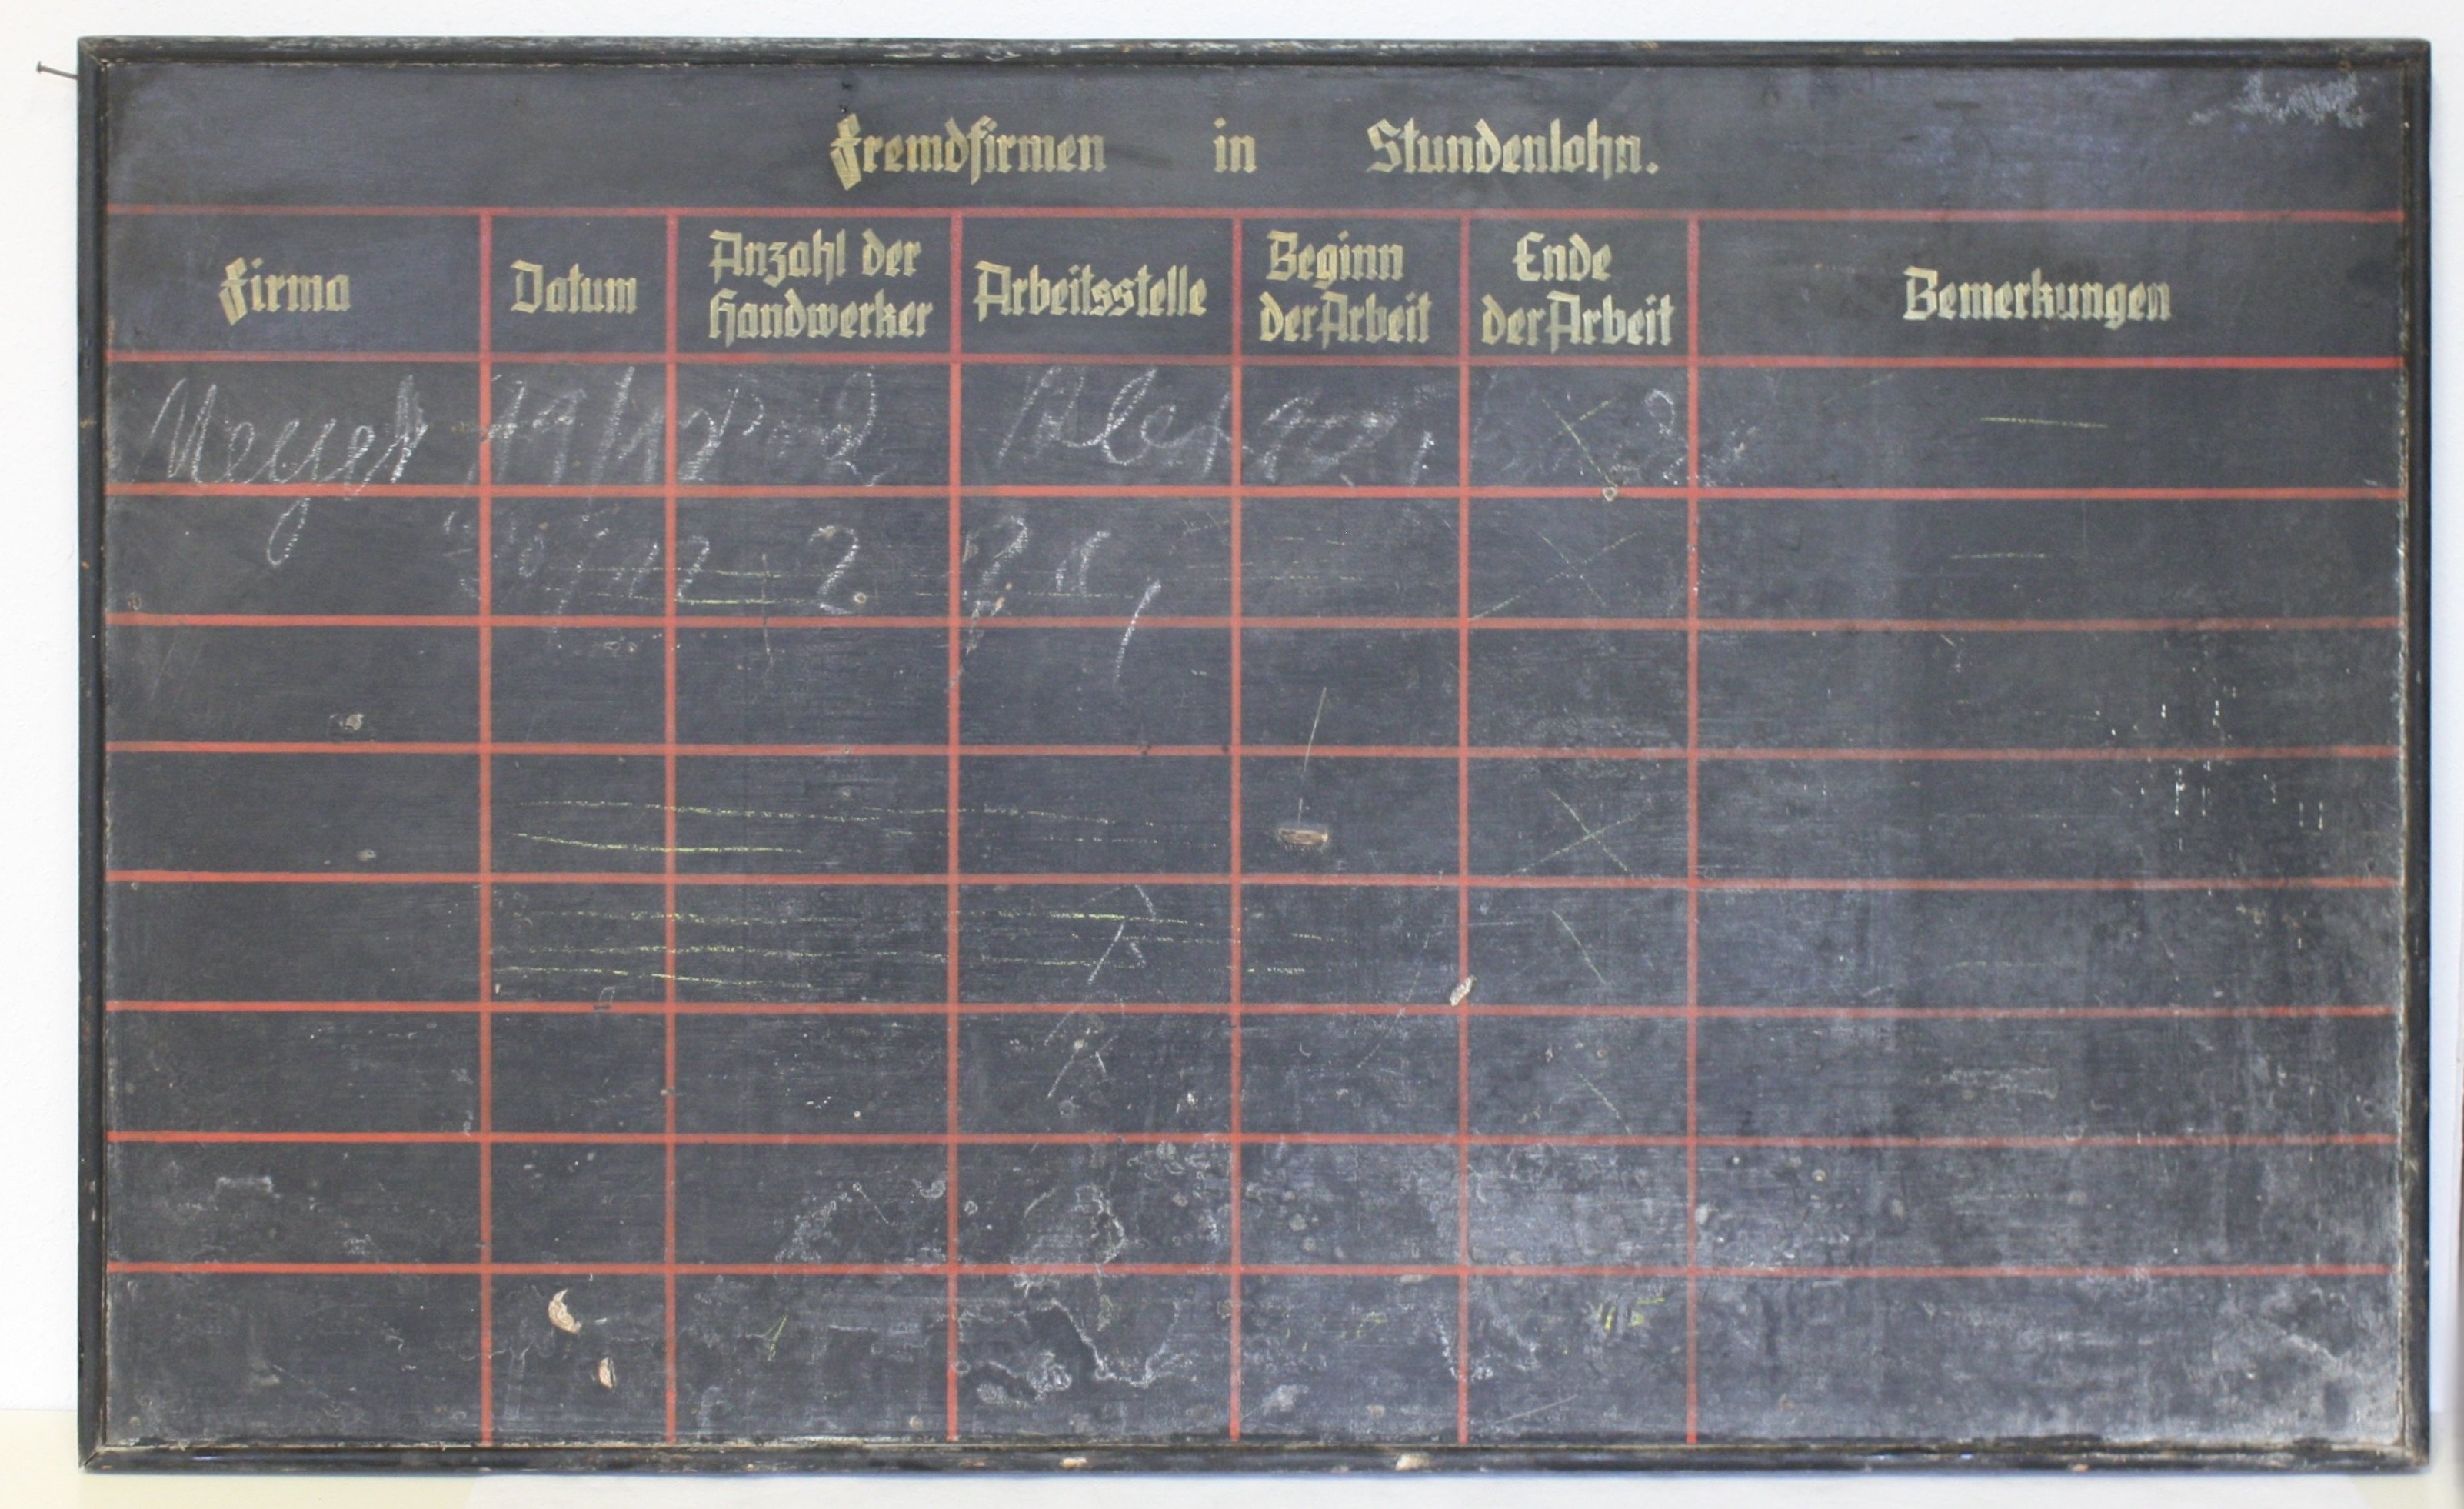 Wandtafel "Fremdfirmen" (LWL-Psychiatriemuseum Warstein CC BY-NC-SA)